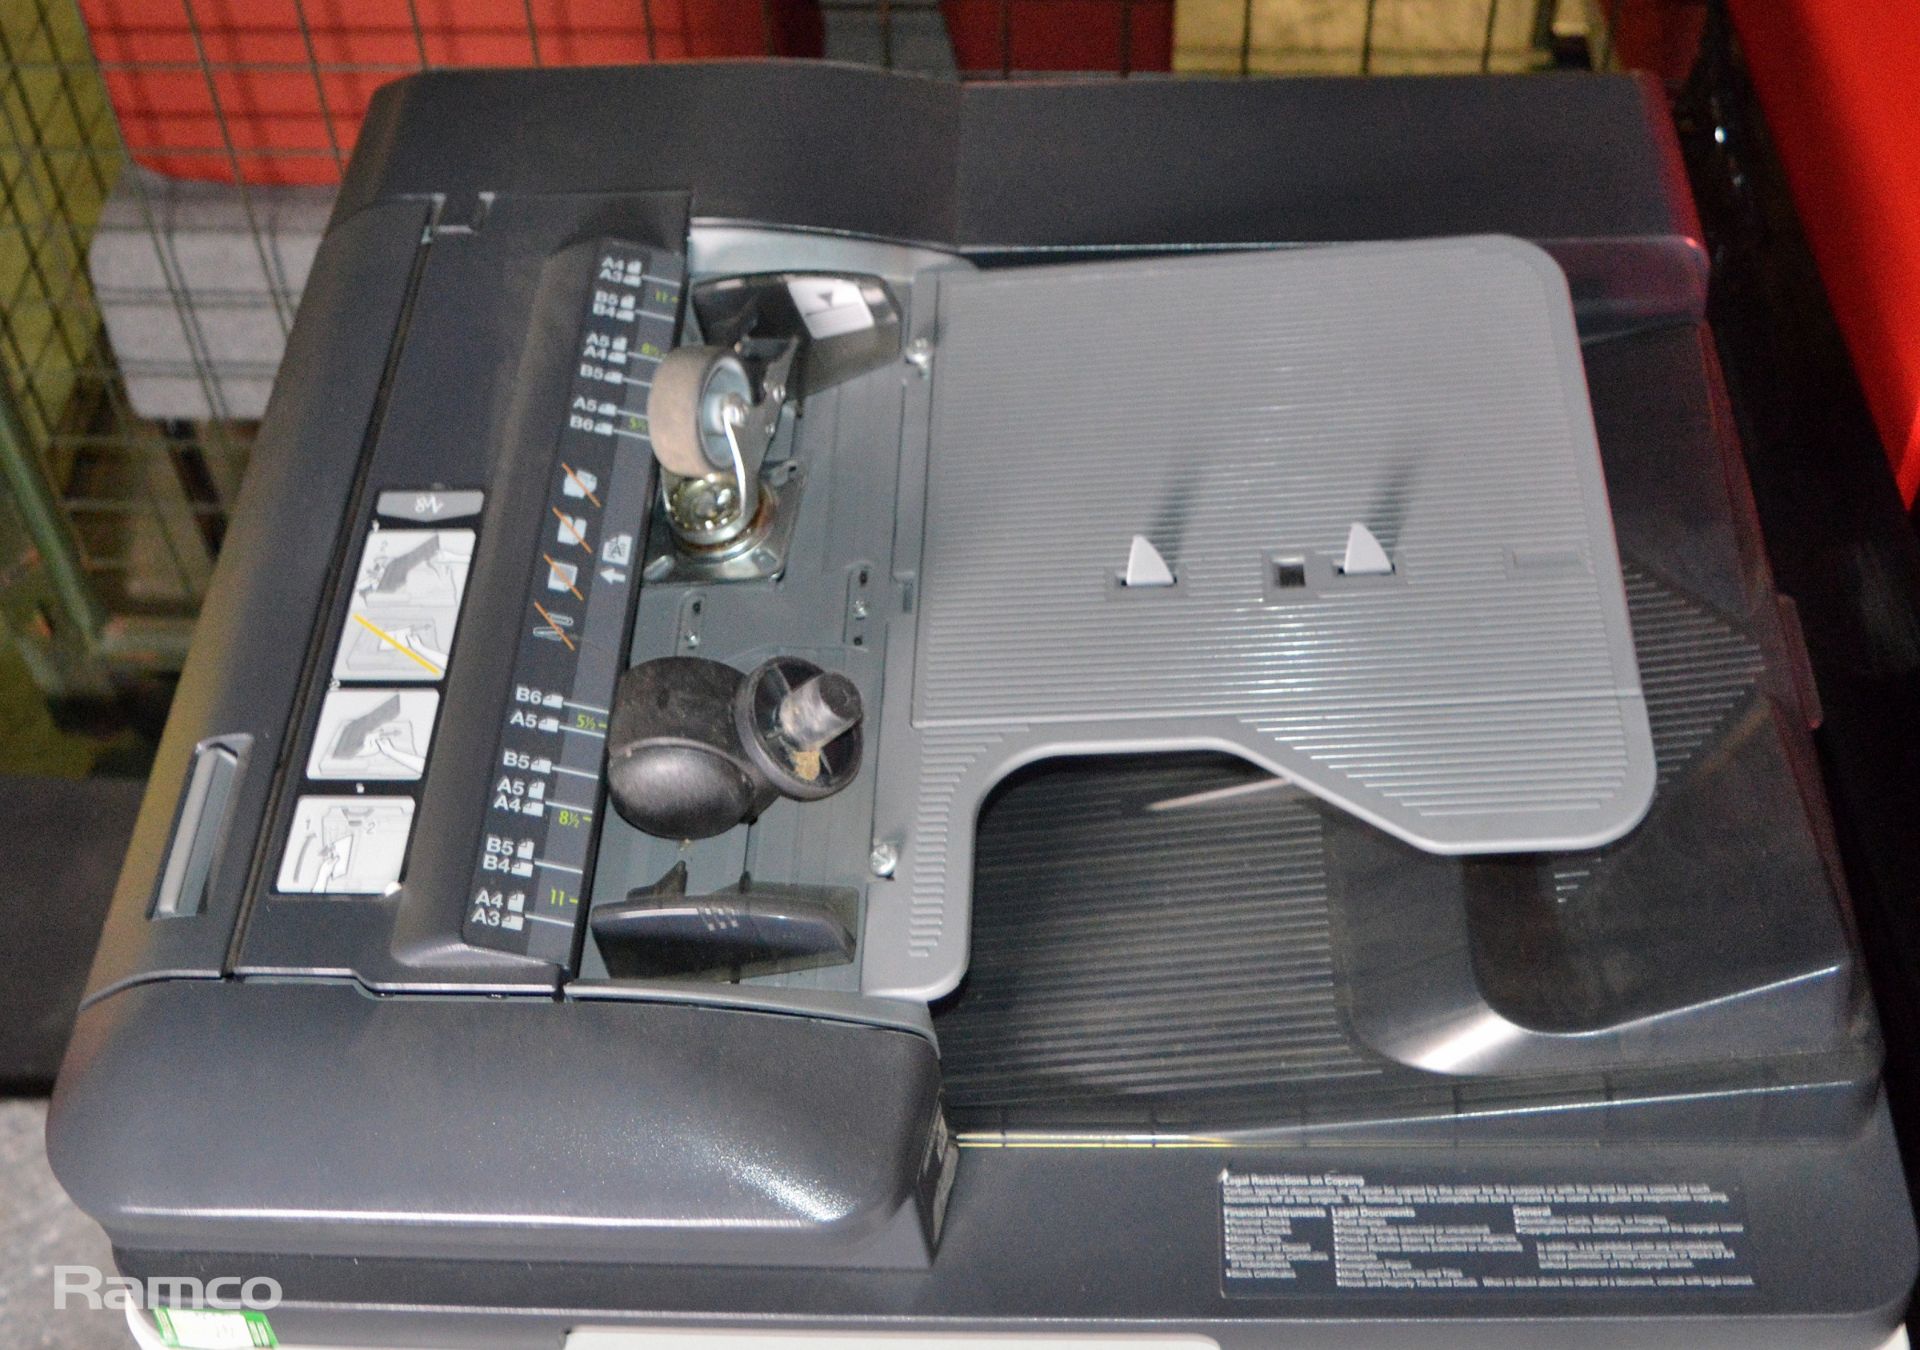 Konica Minolta Bizhub C220 Photocopier L 650mm x W 700mm x H 1150mm - Image 5 of 10